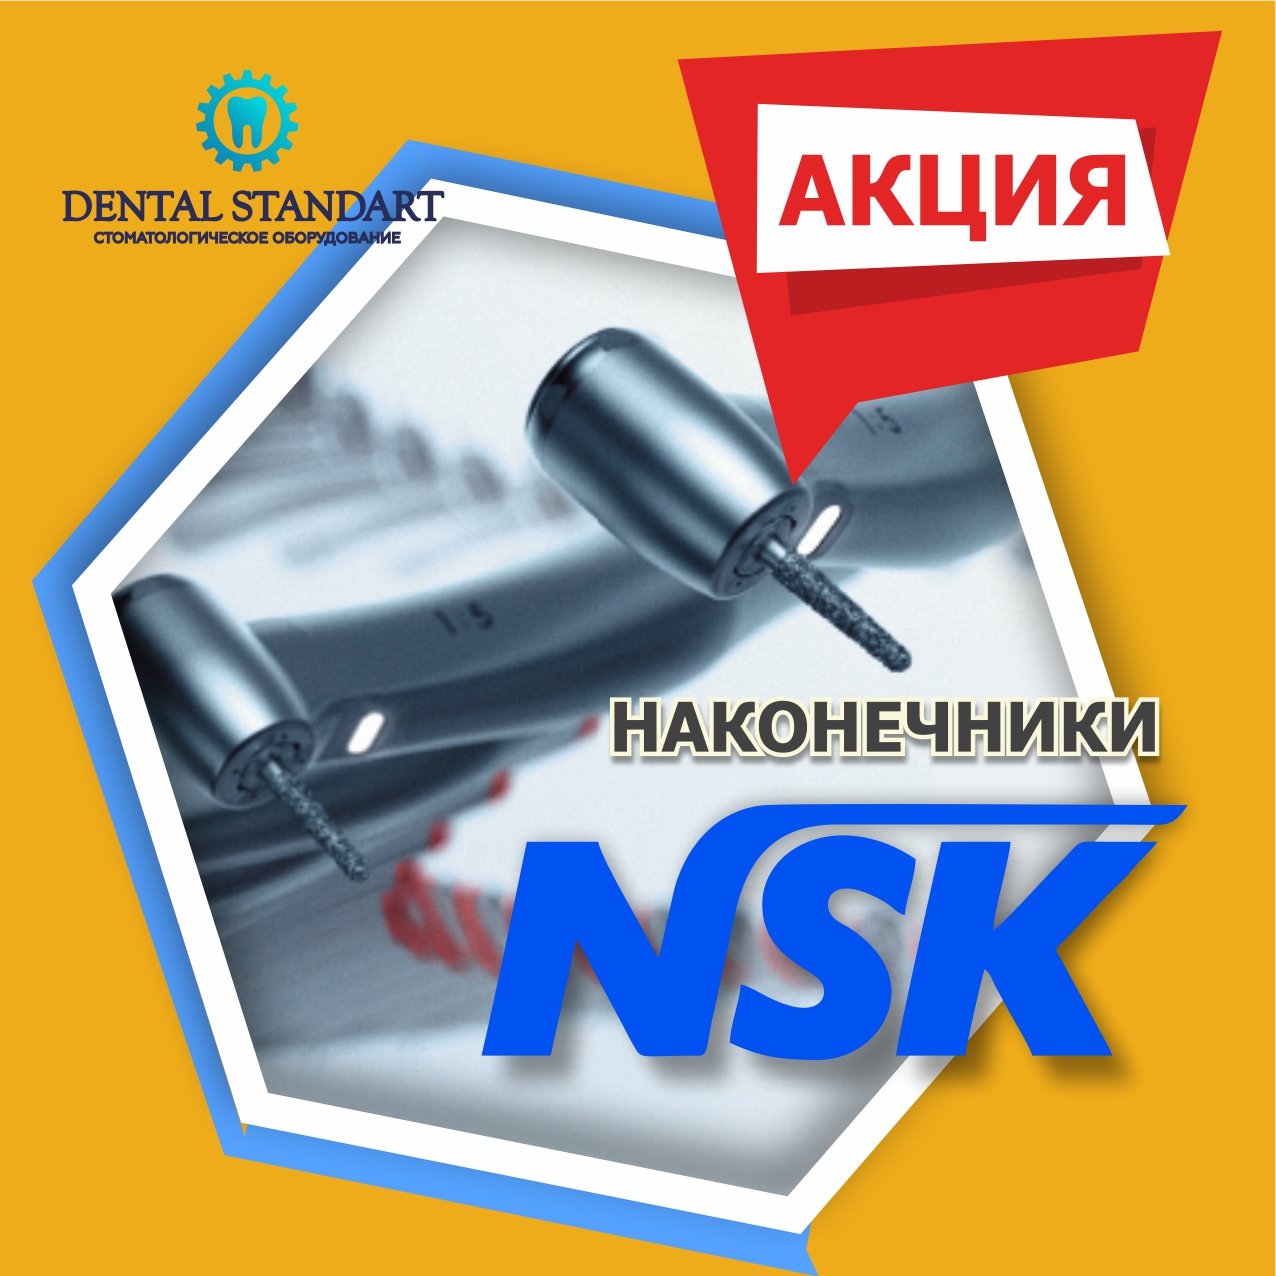 ❗АКЦИЯ ❗ Наконечники от компании NSK и другое стоматологическое оборудования в Краснодаре.